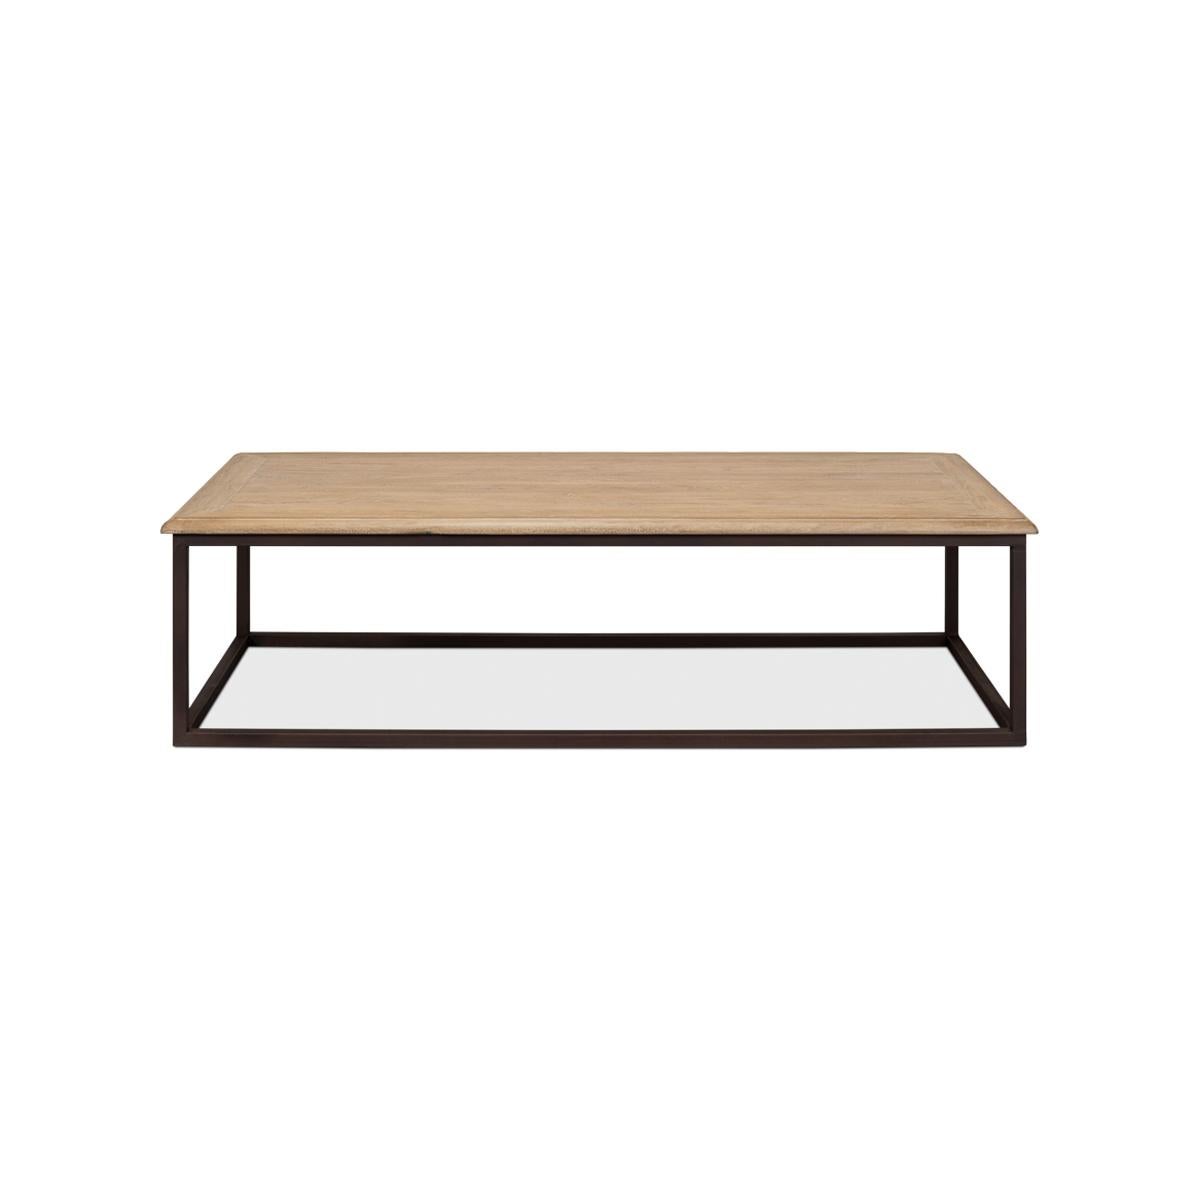 Ein großer Tisch mit einer rechteckigen Platte aus recyceltem Holz in einem Parkettmuster, kombiniert mit altem Eisen in Würfelform, das diesem rechteckigen Tisch ein gutes Aussehen verleiht

Abmessungen: 72